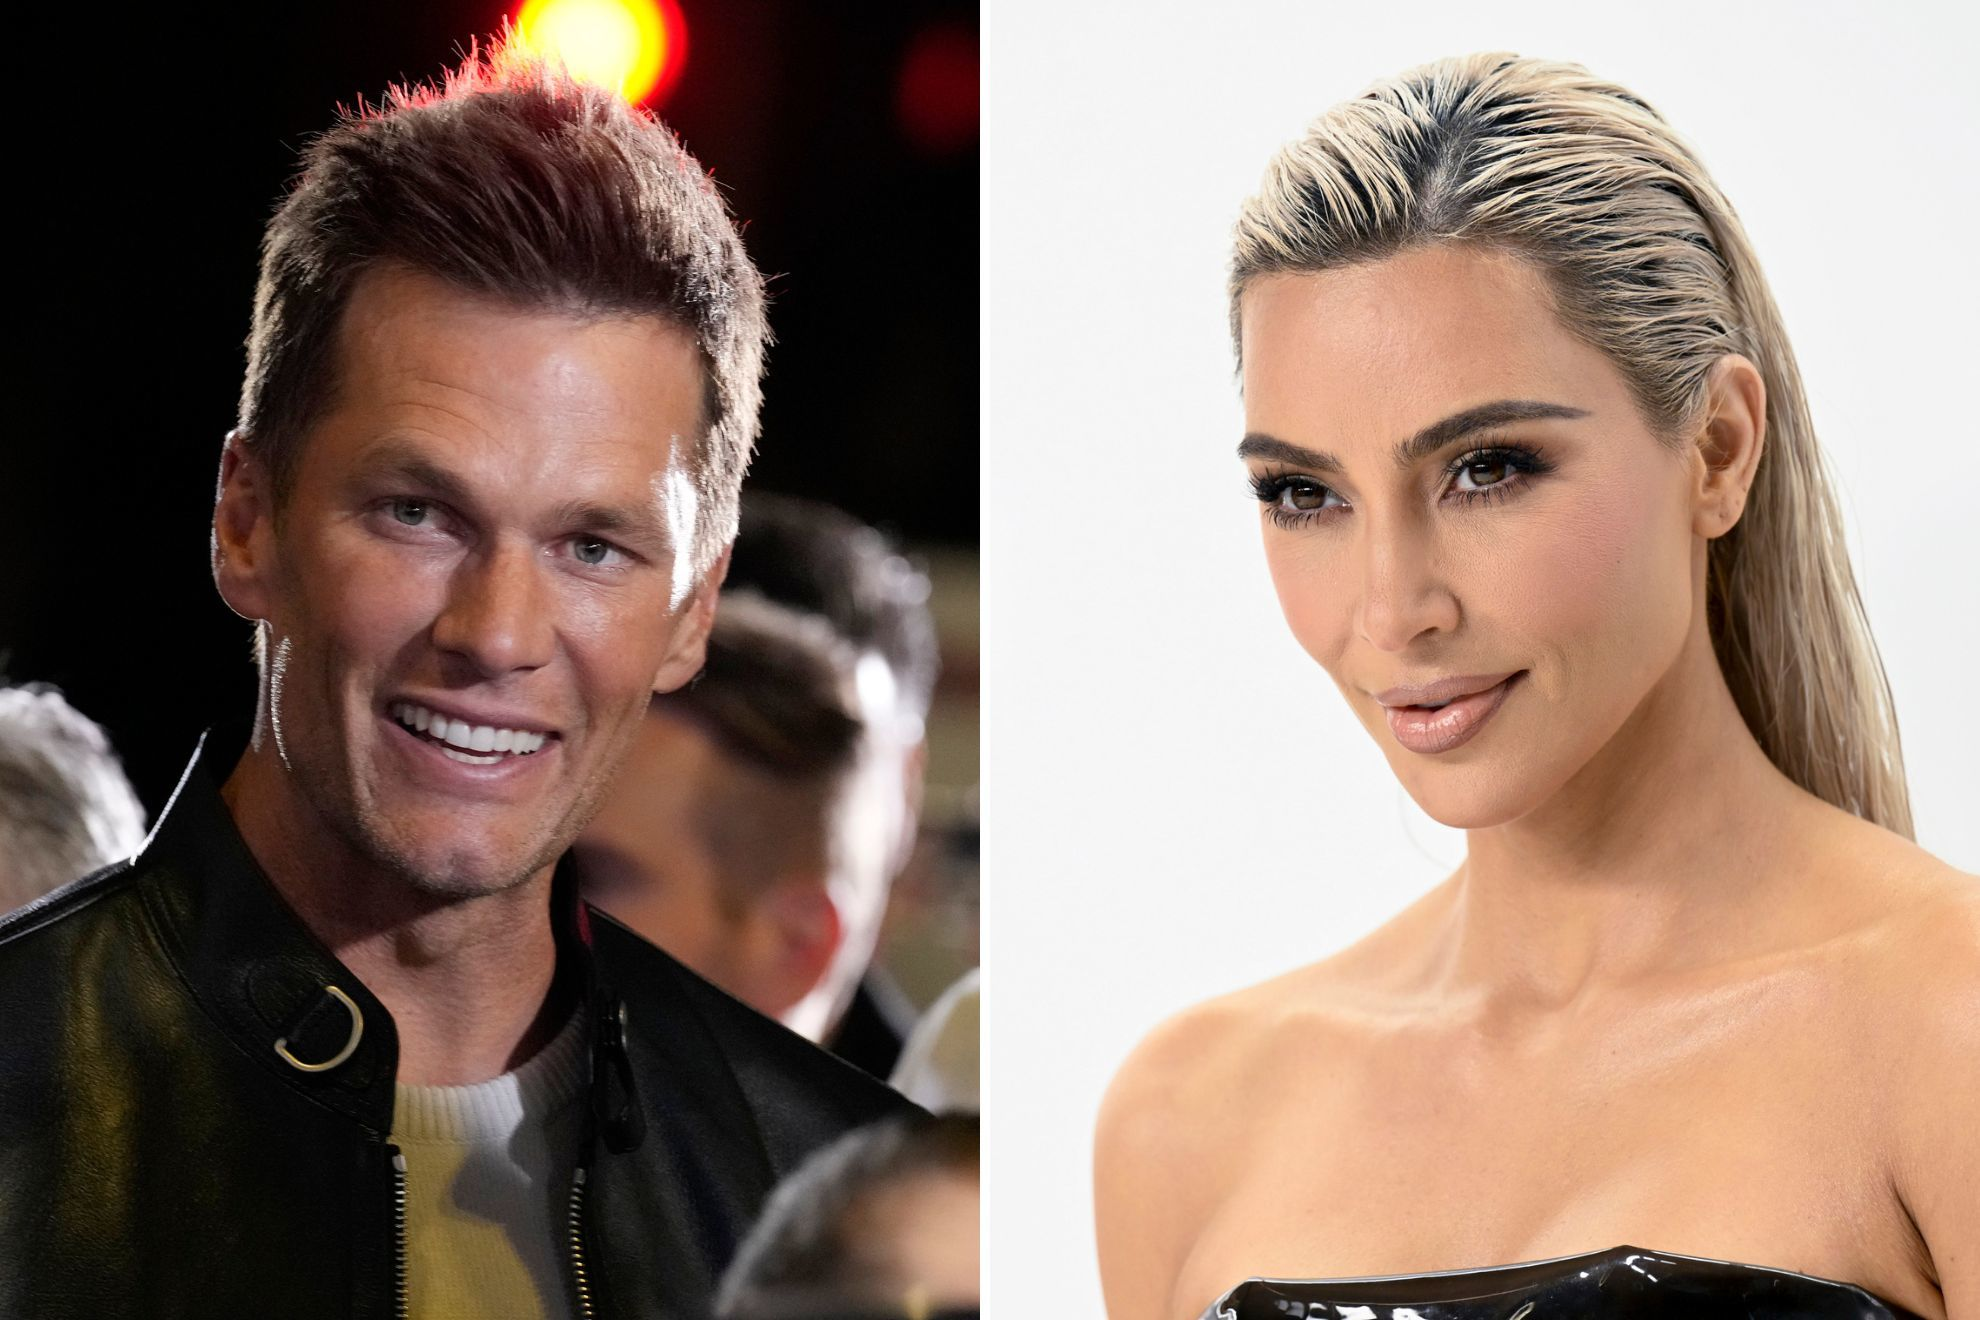 Tom Brady was rumored to be linked with Kim Kardashian